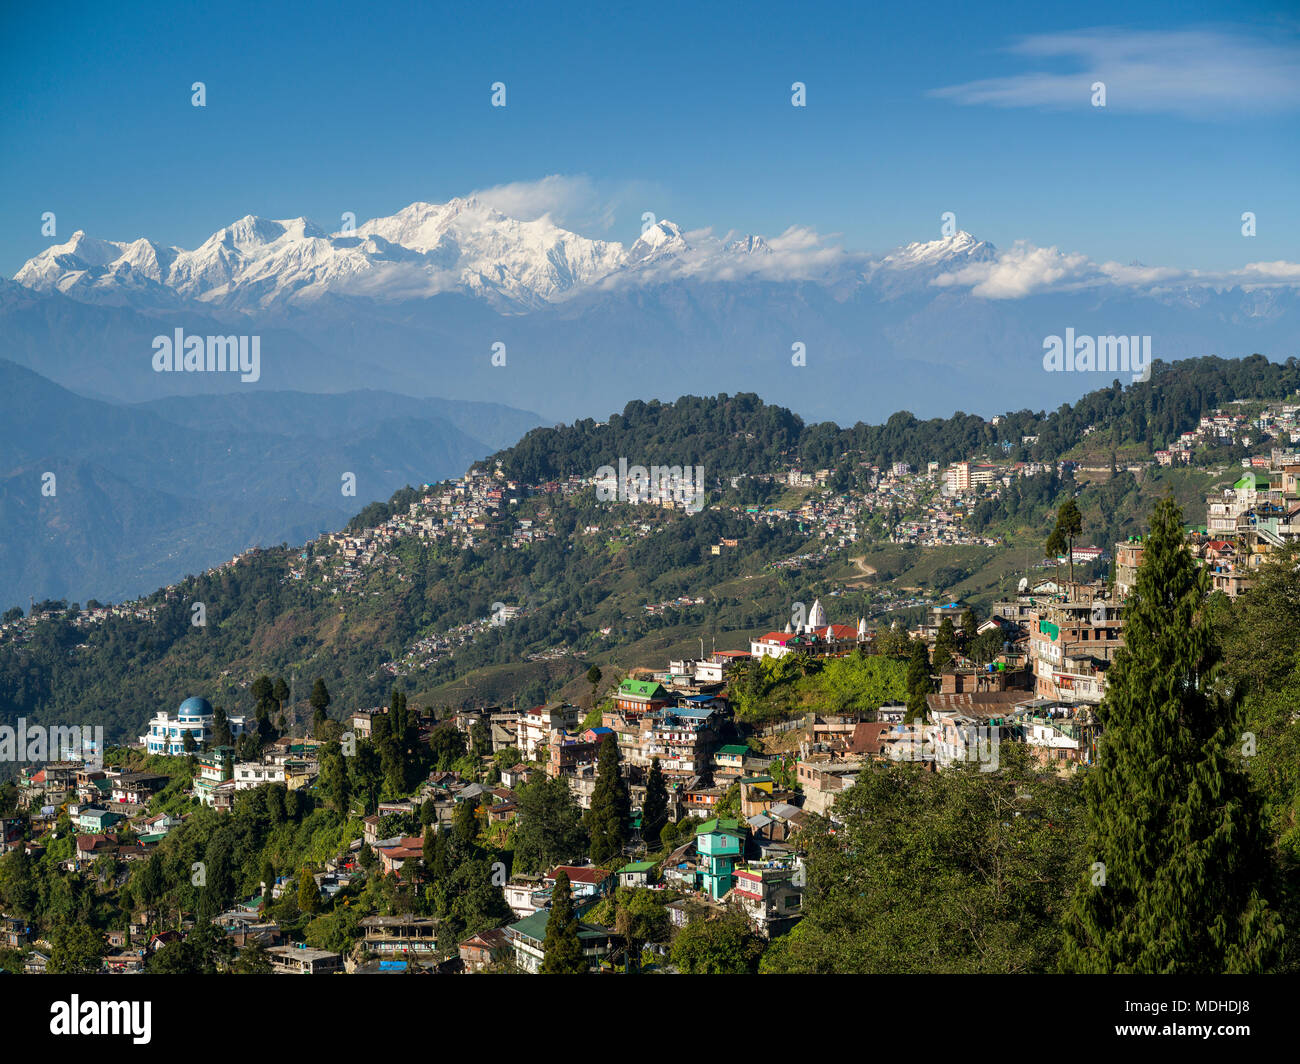 Stadt an einem Berghang mit der schroffen, schneebedeckten Gipfel des Himalaya in der Ferne; Darjeeling, West Bengalen, Indien Stockfoto